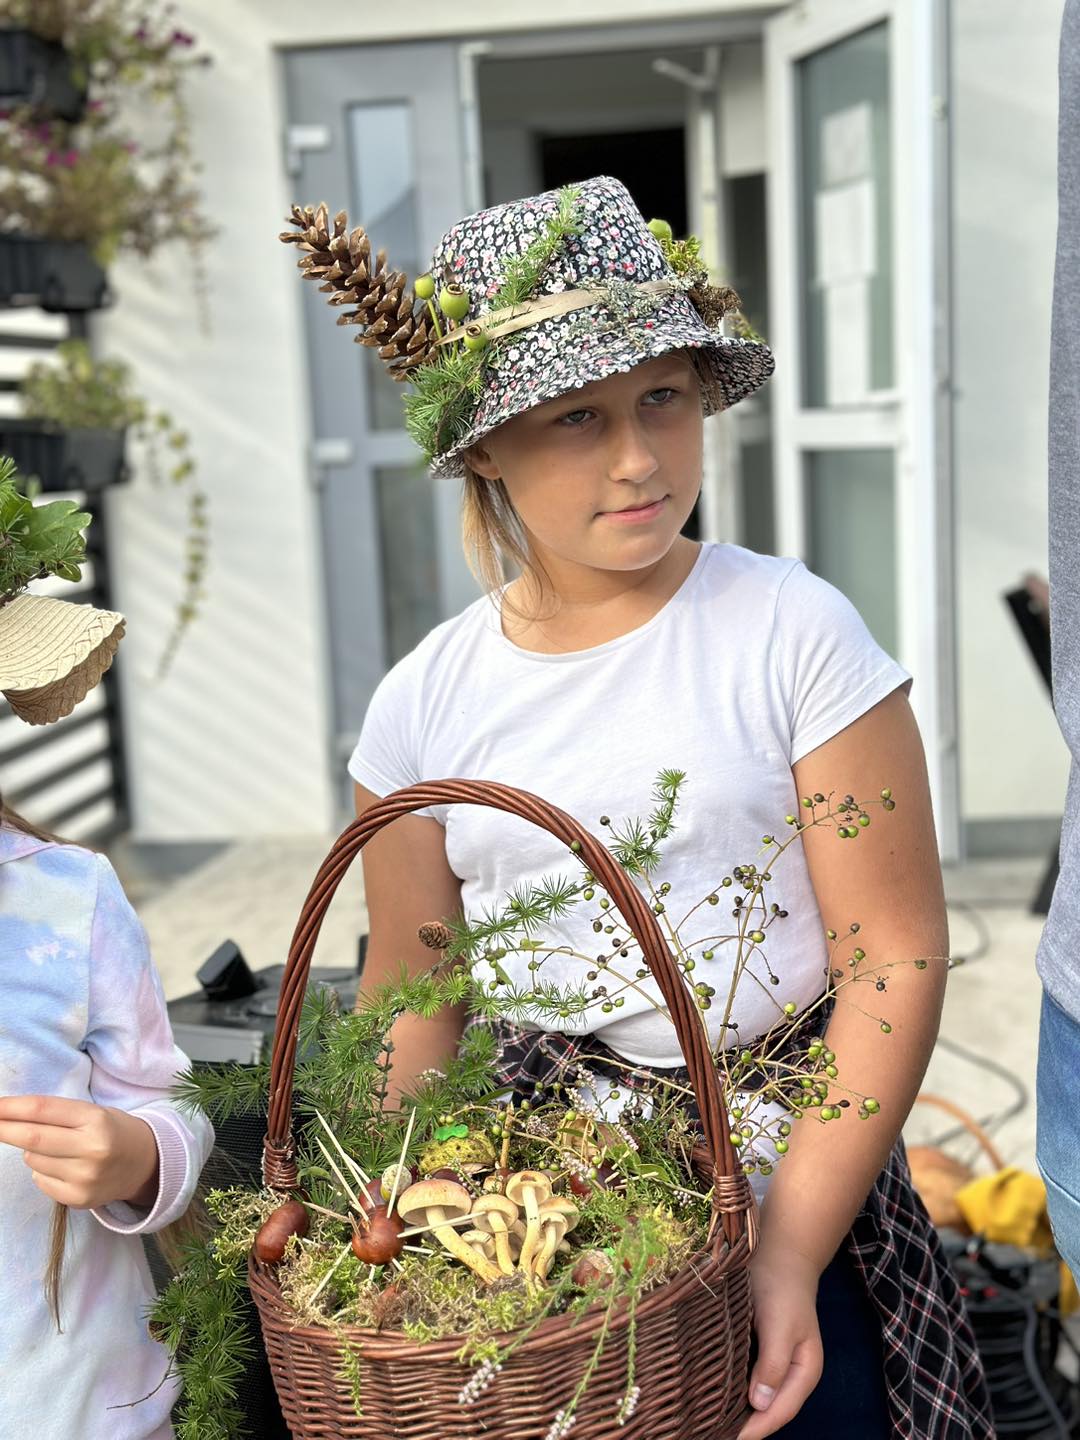 Na zdjęciu widzimy dziewczynkę, która ma kapelusz przyozdobiony "darami lasu" i koszyk "runo leśne".